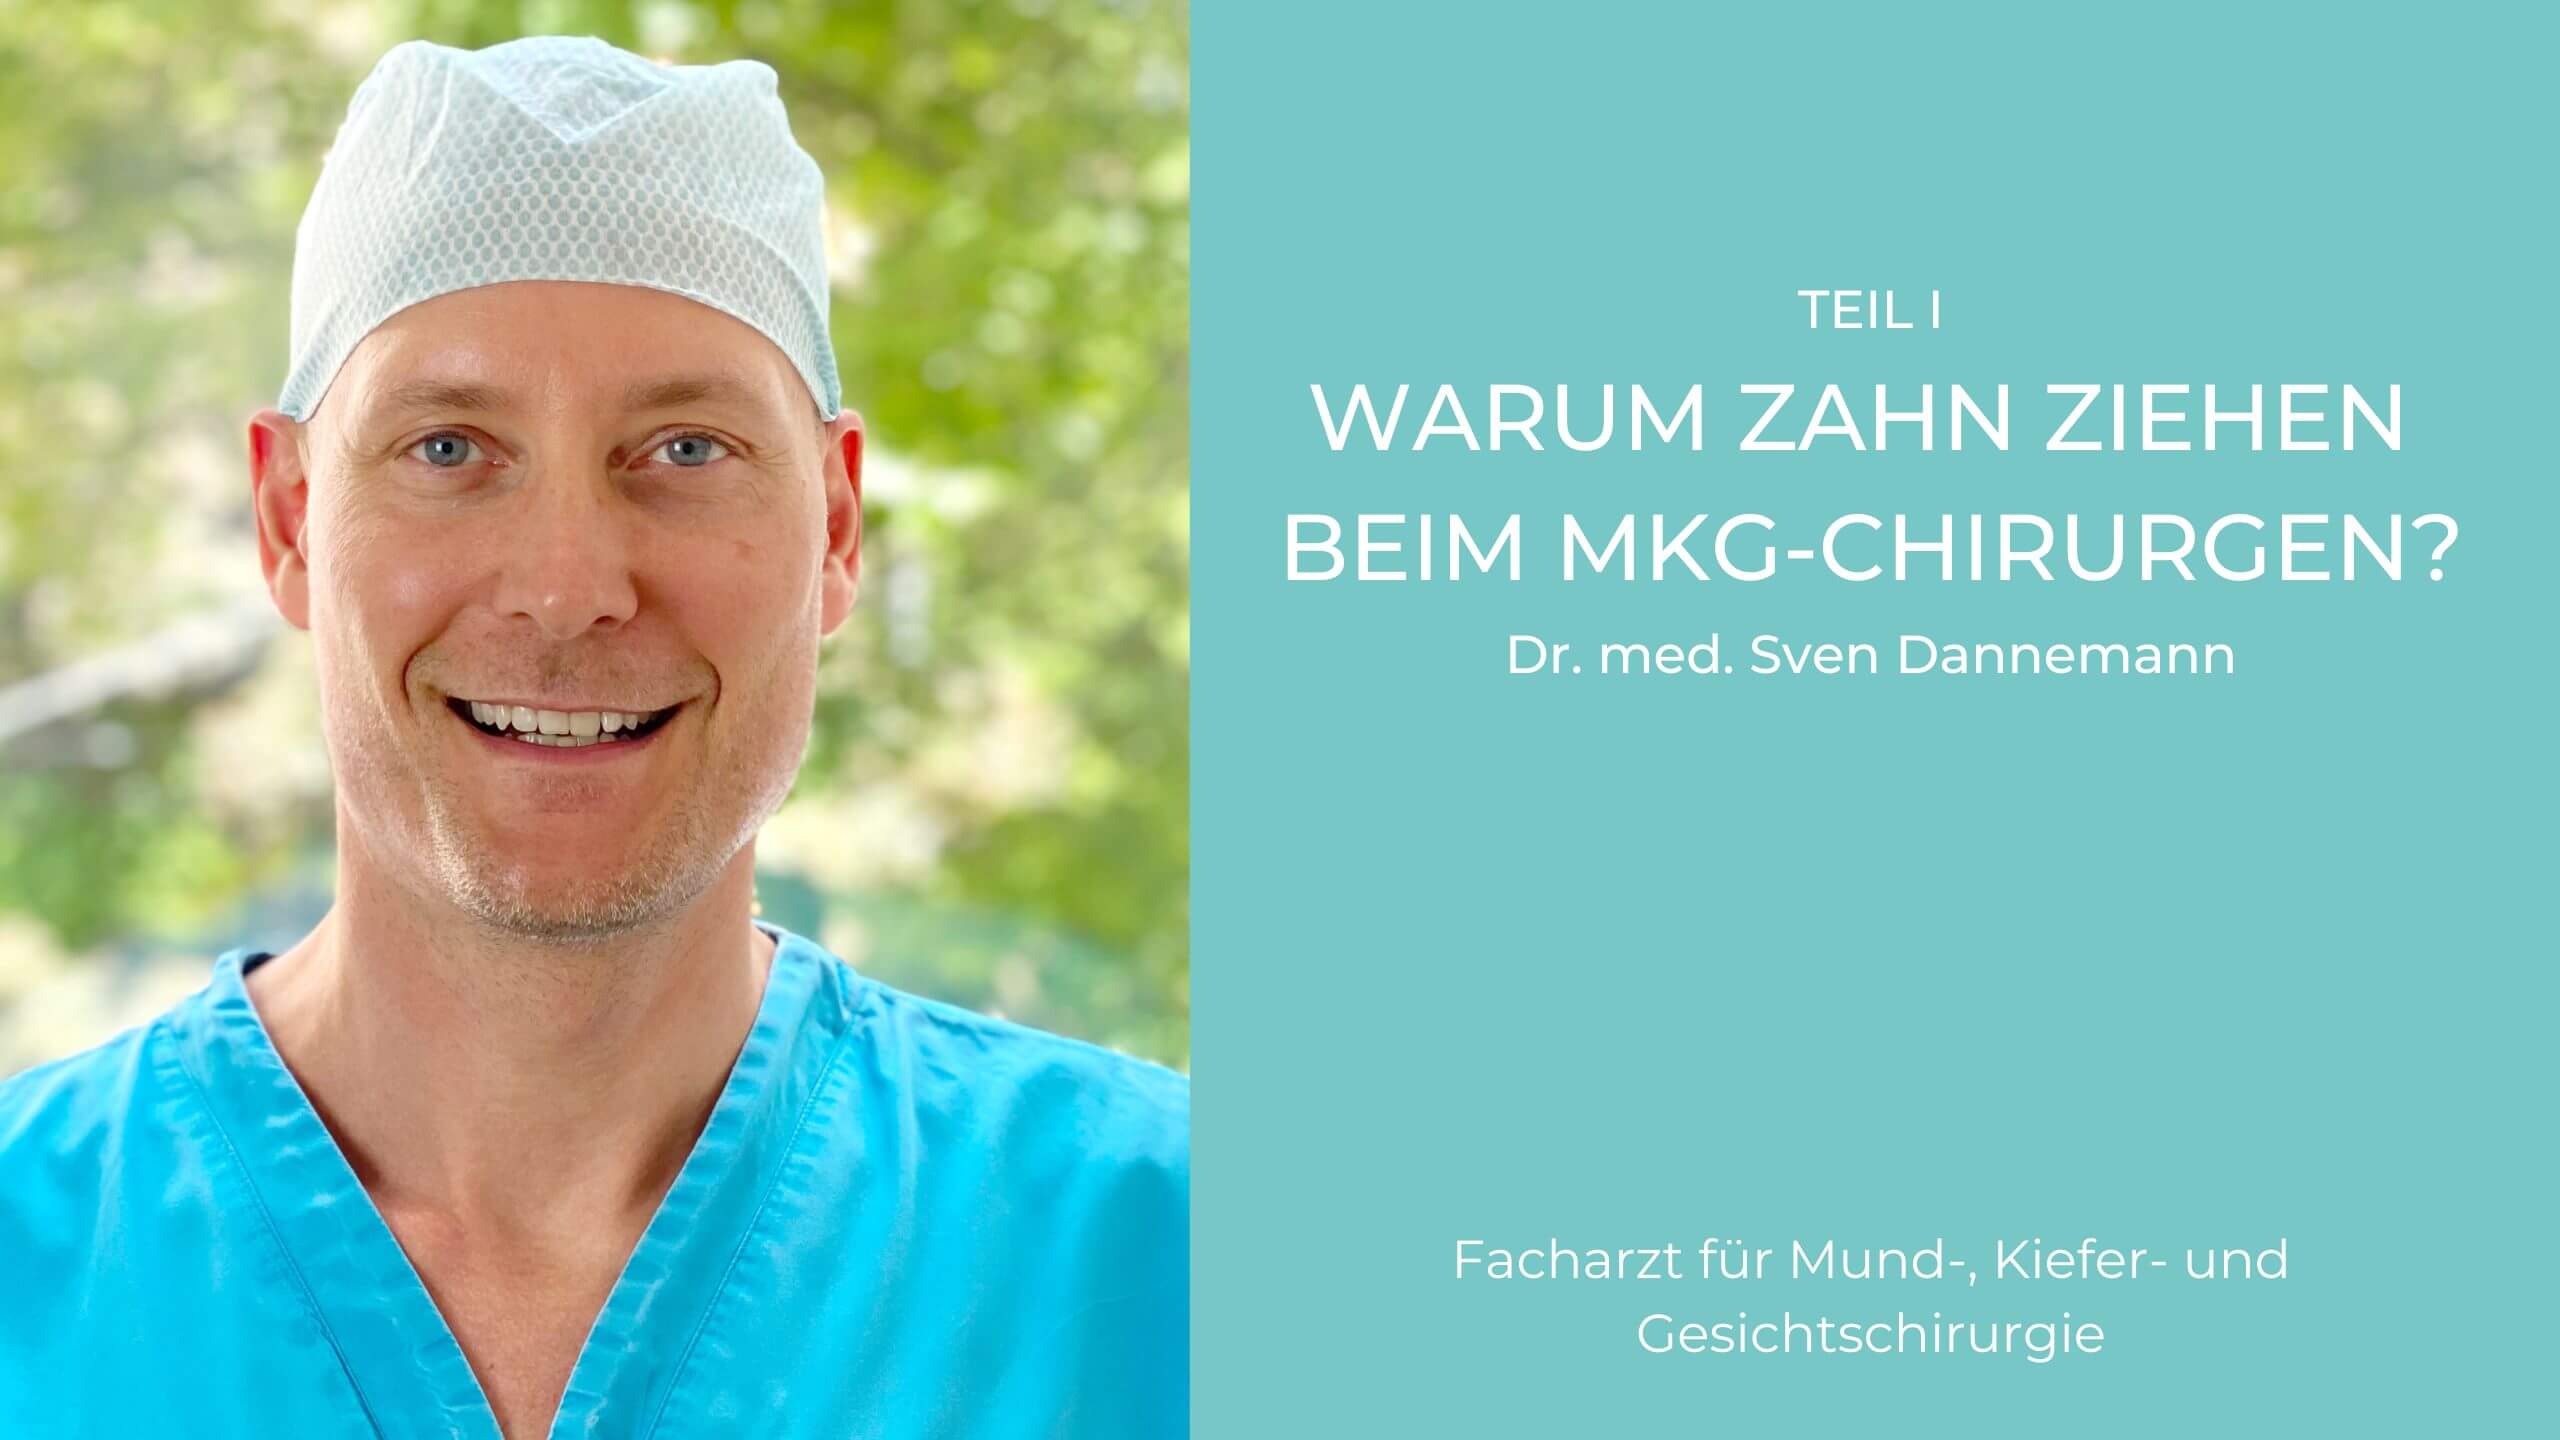 Video Zahn ziehen, Mund-Kiefer-Gesichtschirurgie (MKG) in München, Dr. Dannemann